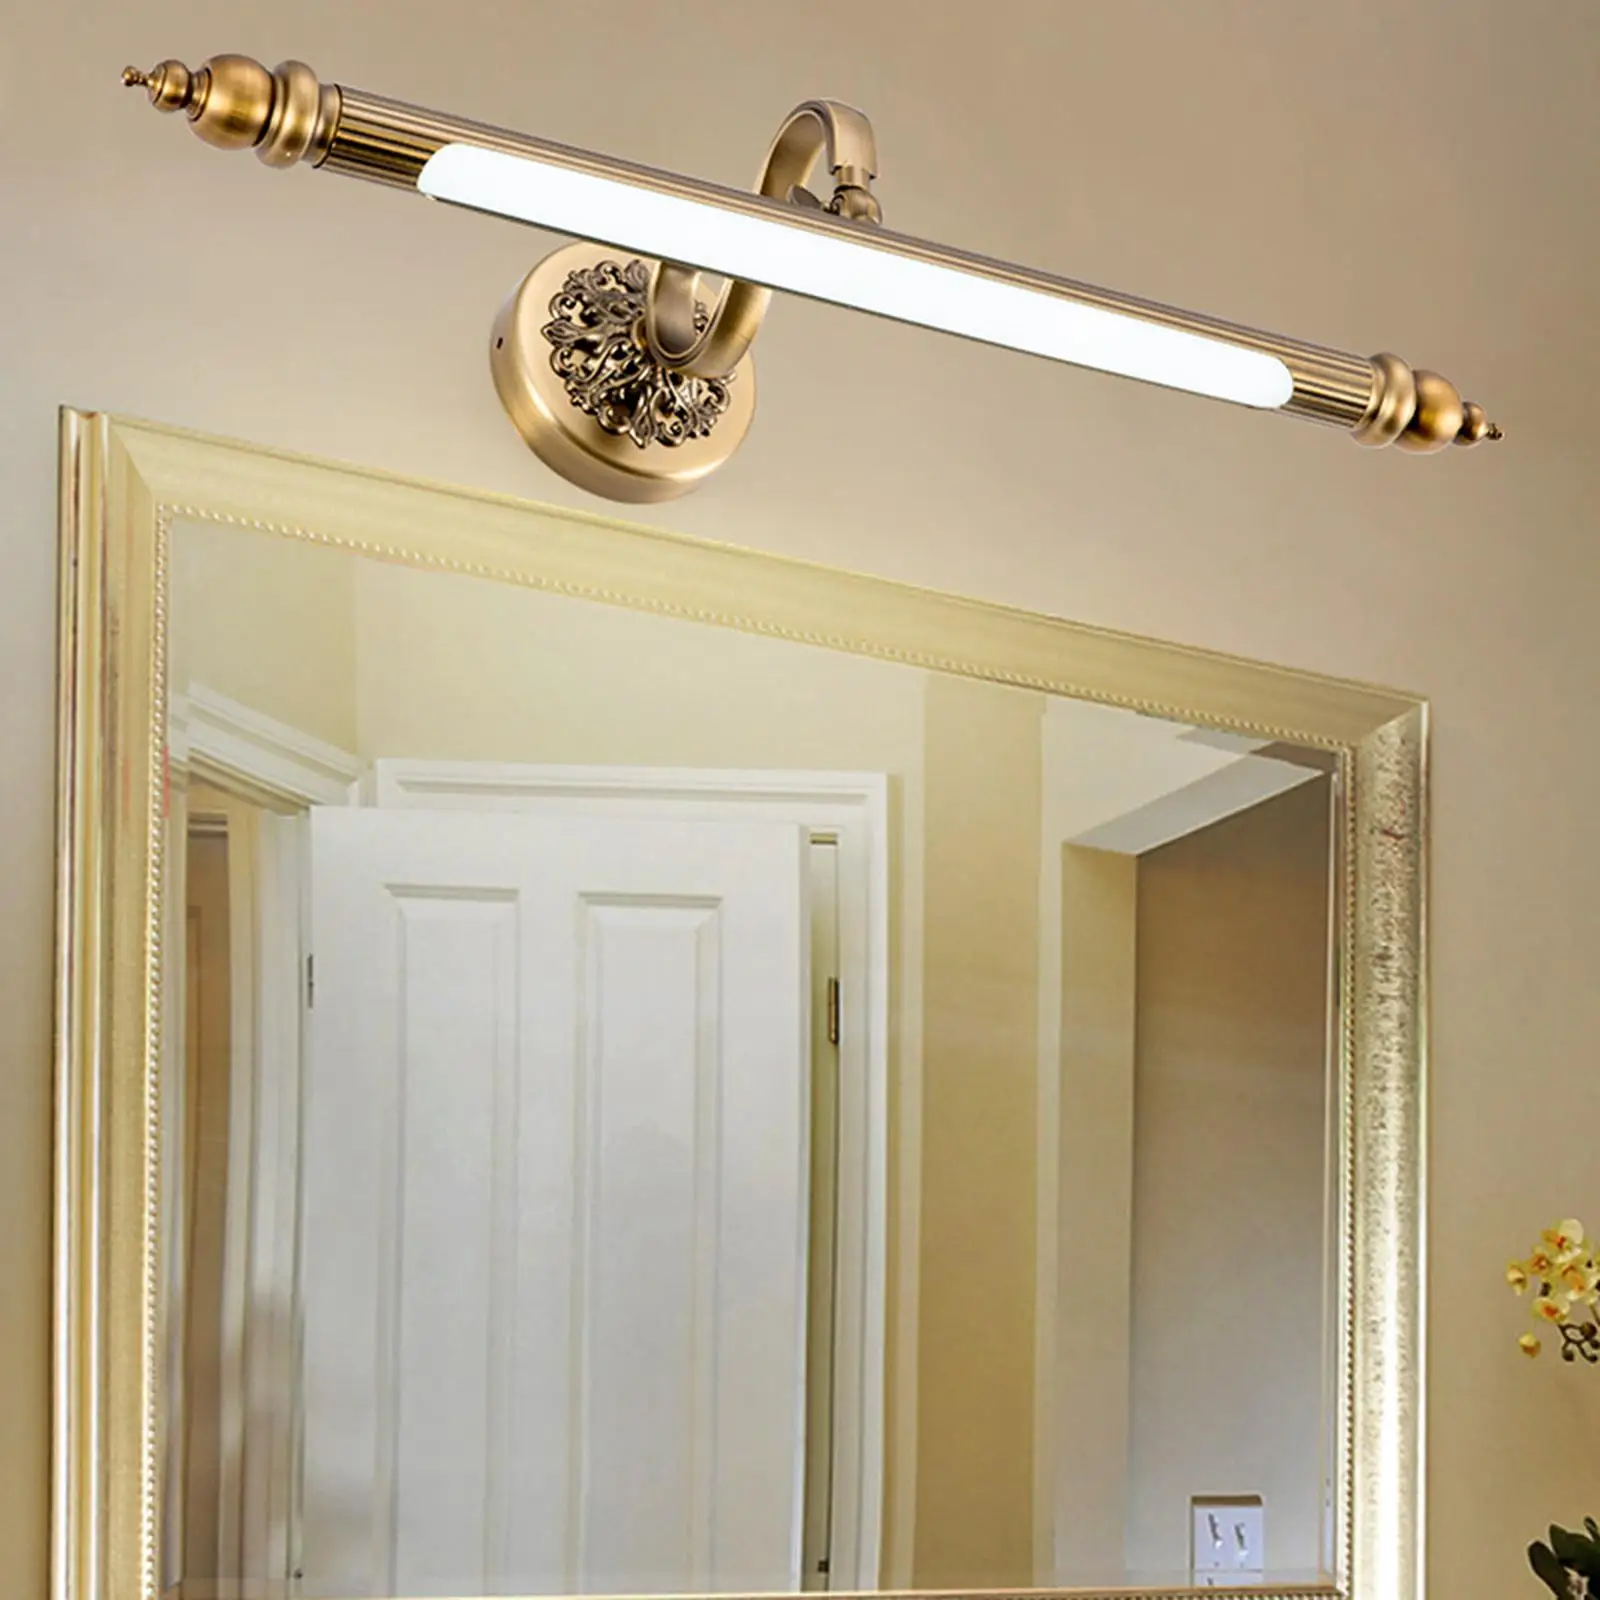 Wired Light Adjustable Rustproof for Bedroom Bathroom Home Indoor